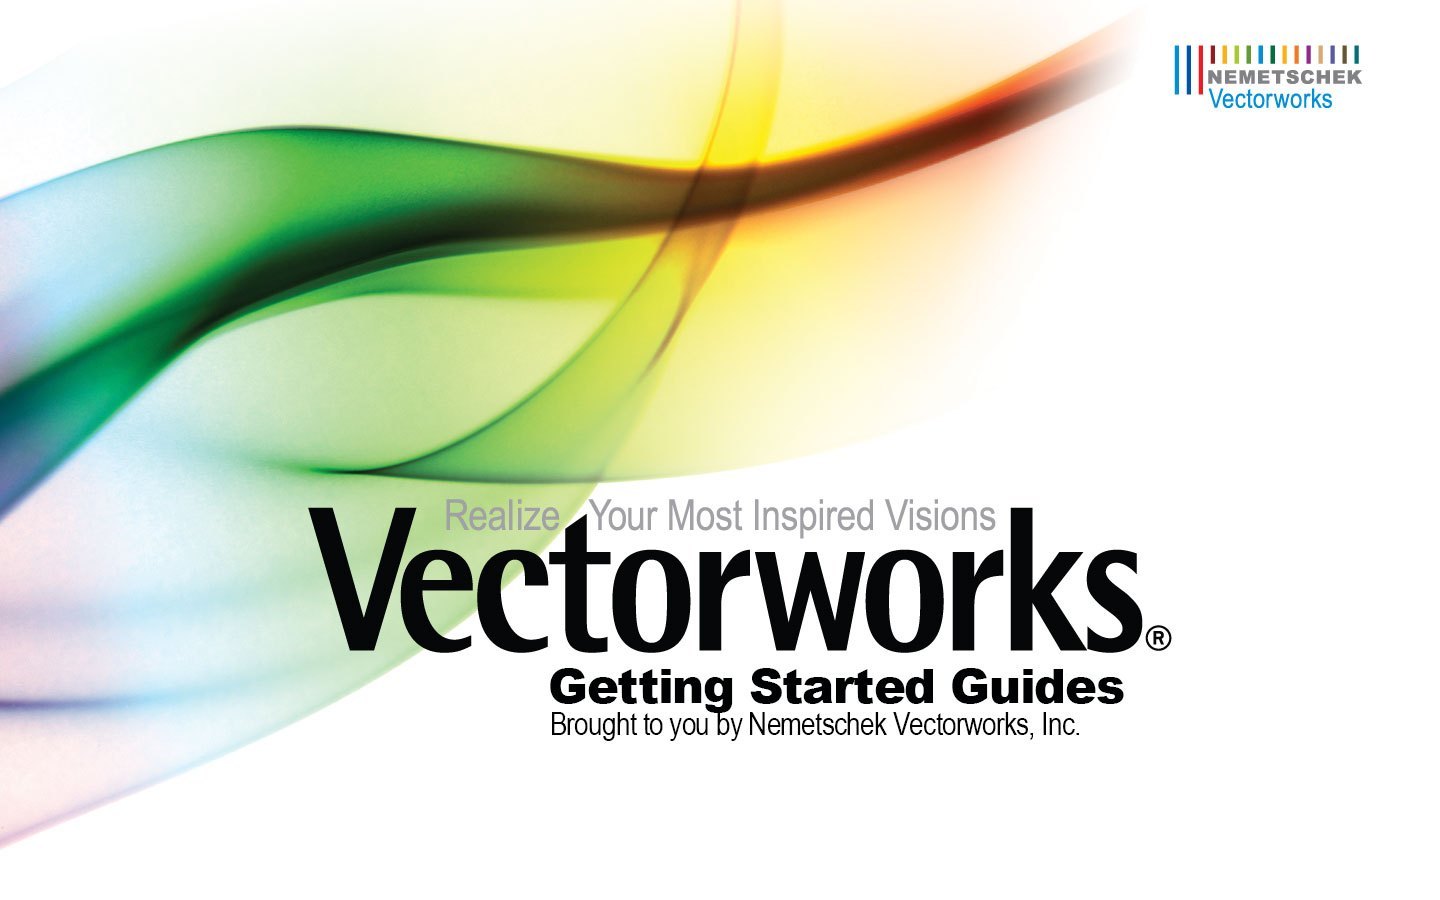 vectorworks 2018 download